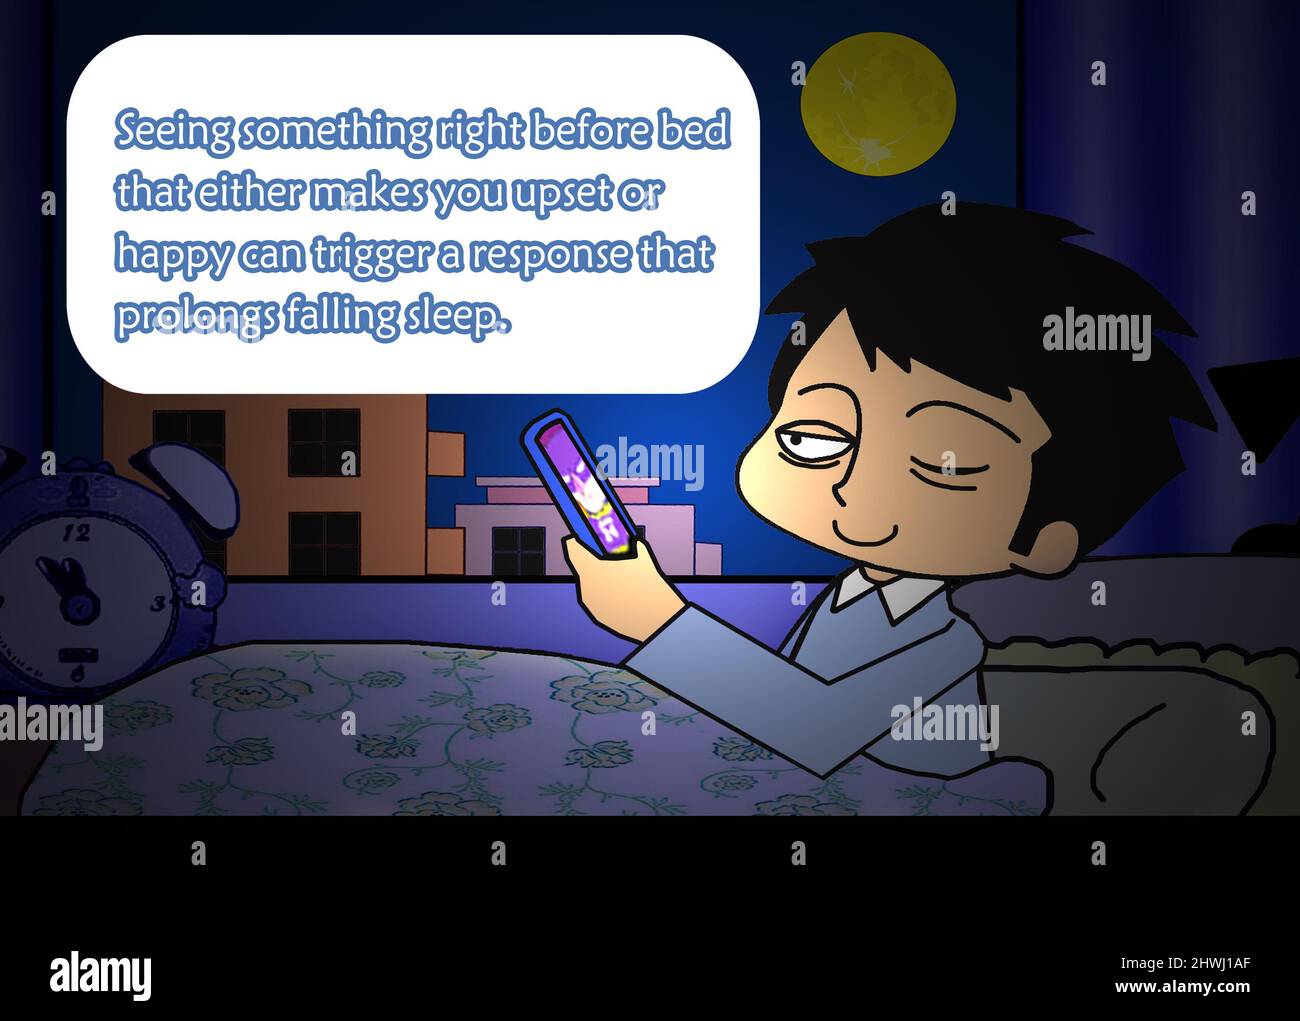 SHANGHAI, CINA - 6 MARZO 2022 - Un cartone animato mostra un bambino che guarda un telefono cellulare prima di andare a letto, Shanghai, Cina, 6 marzo 2022. Mostra di ricerca Foto Stock